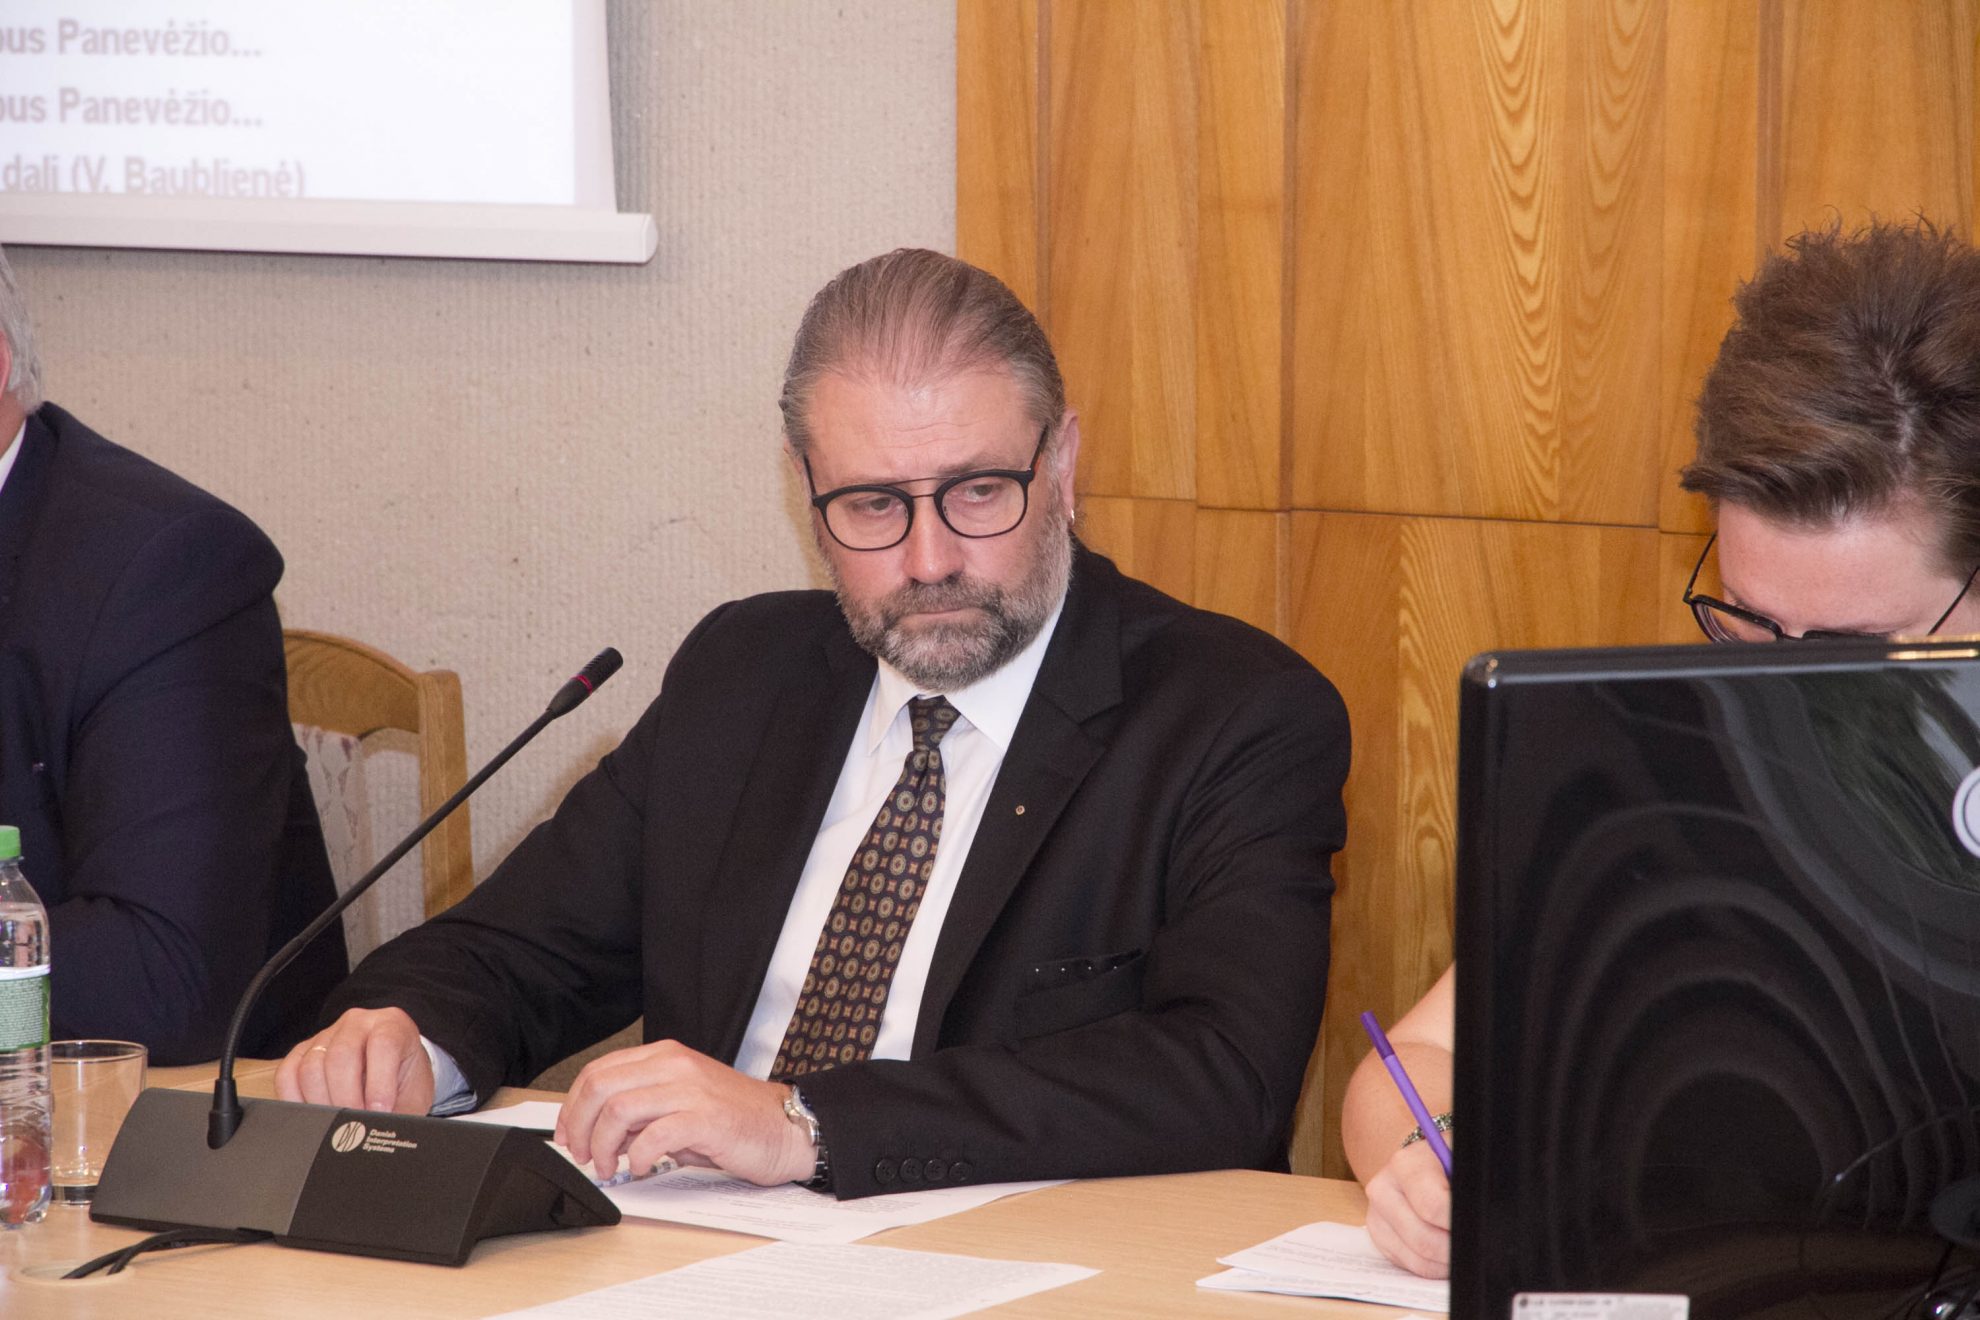 Vilniaus apygardos administracinis teismas pradeda nagrinėti Panevėžio mero Ryčio Račkausko skundą dėl Vyriausiosios tarnybinės etikos sprendimo pripažinti jį supainiojus viešuosius ir privačius interesus.